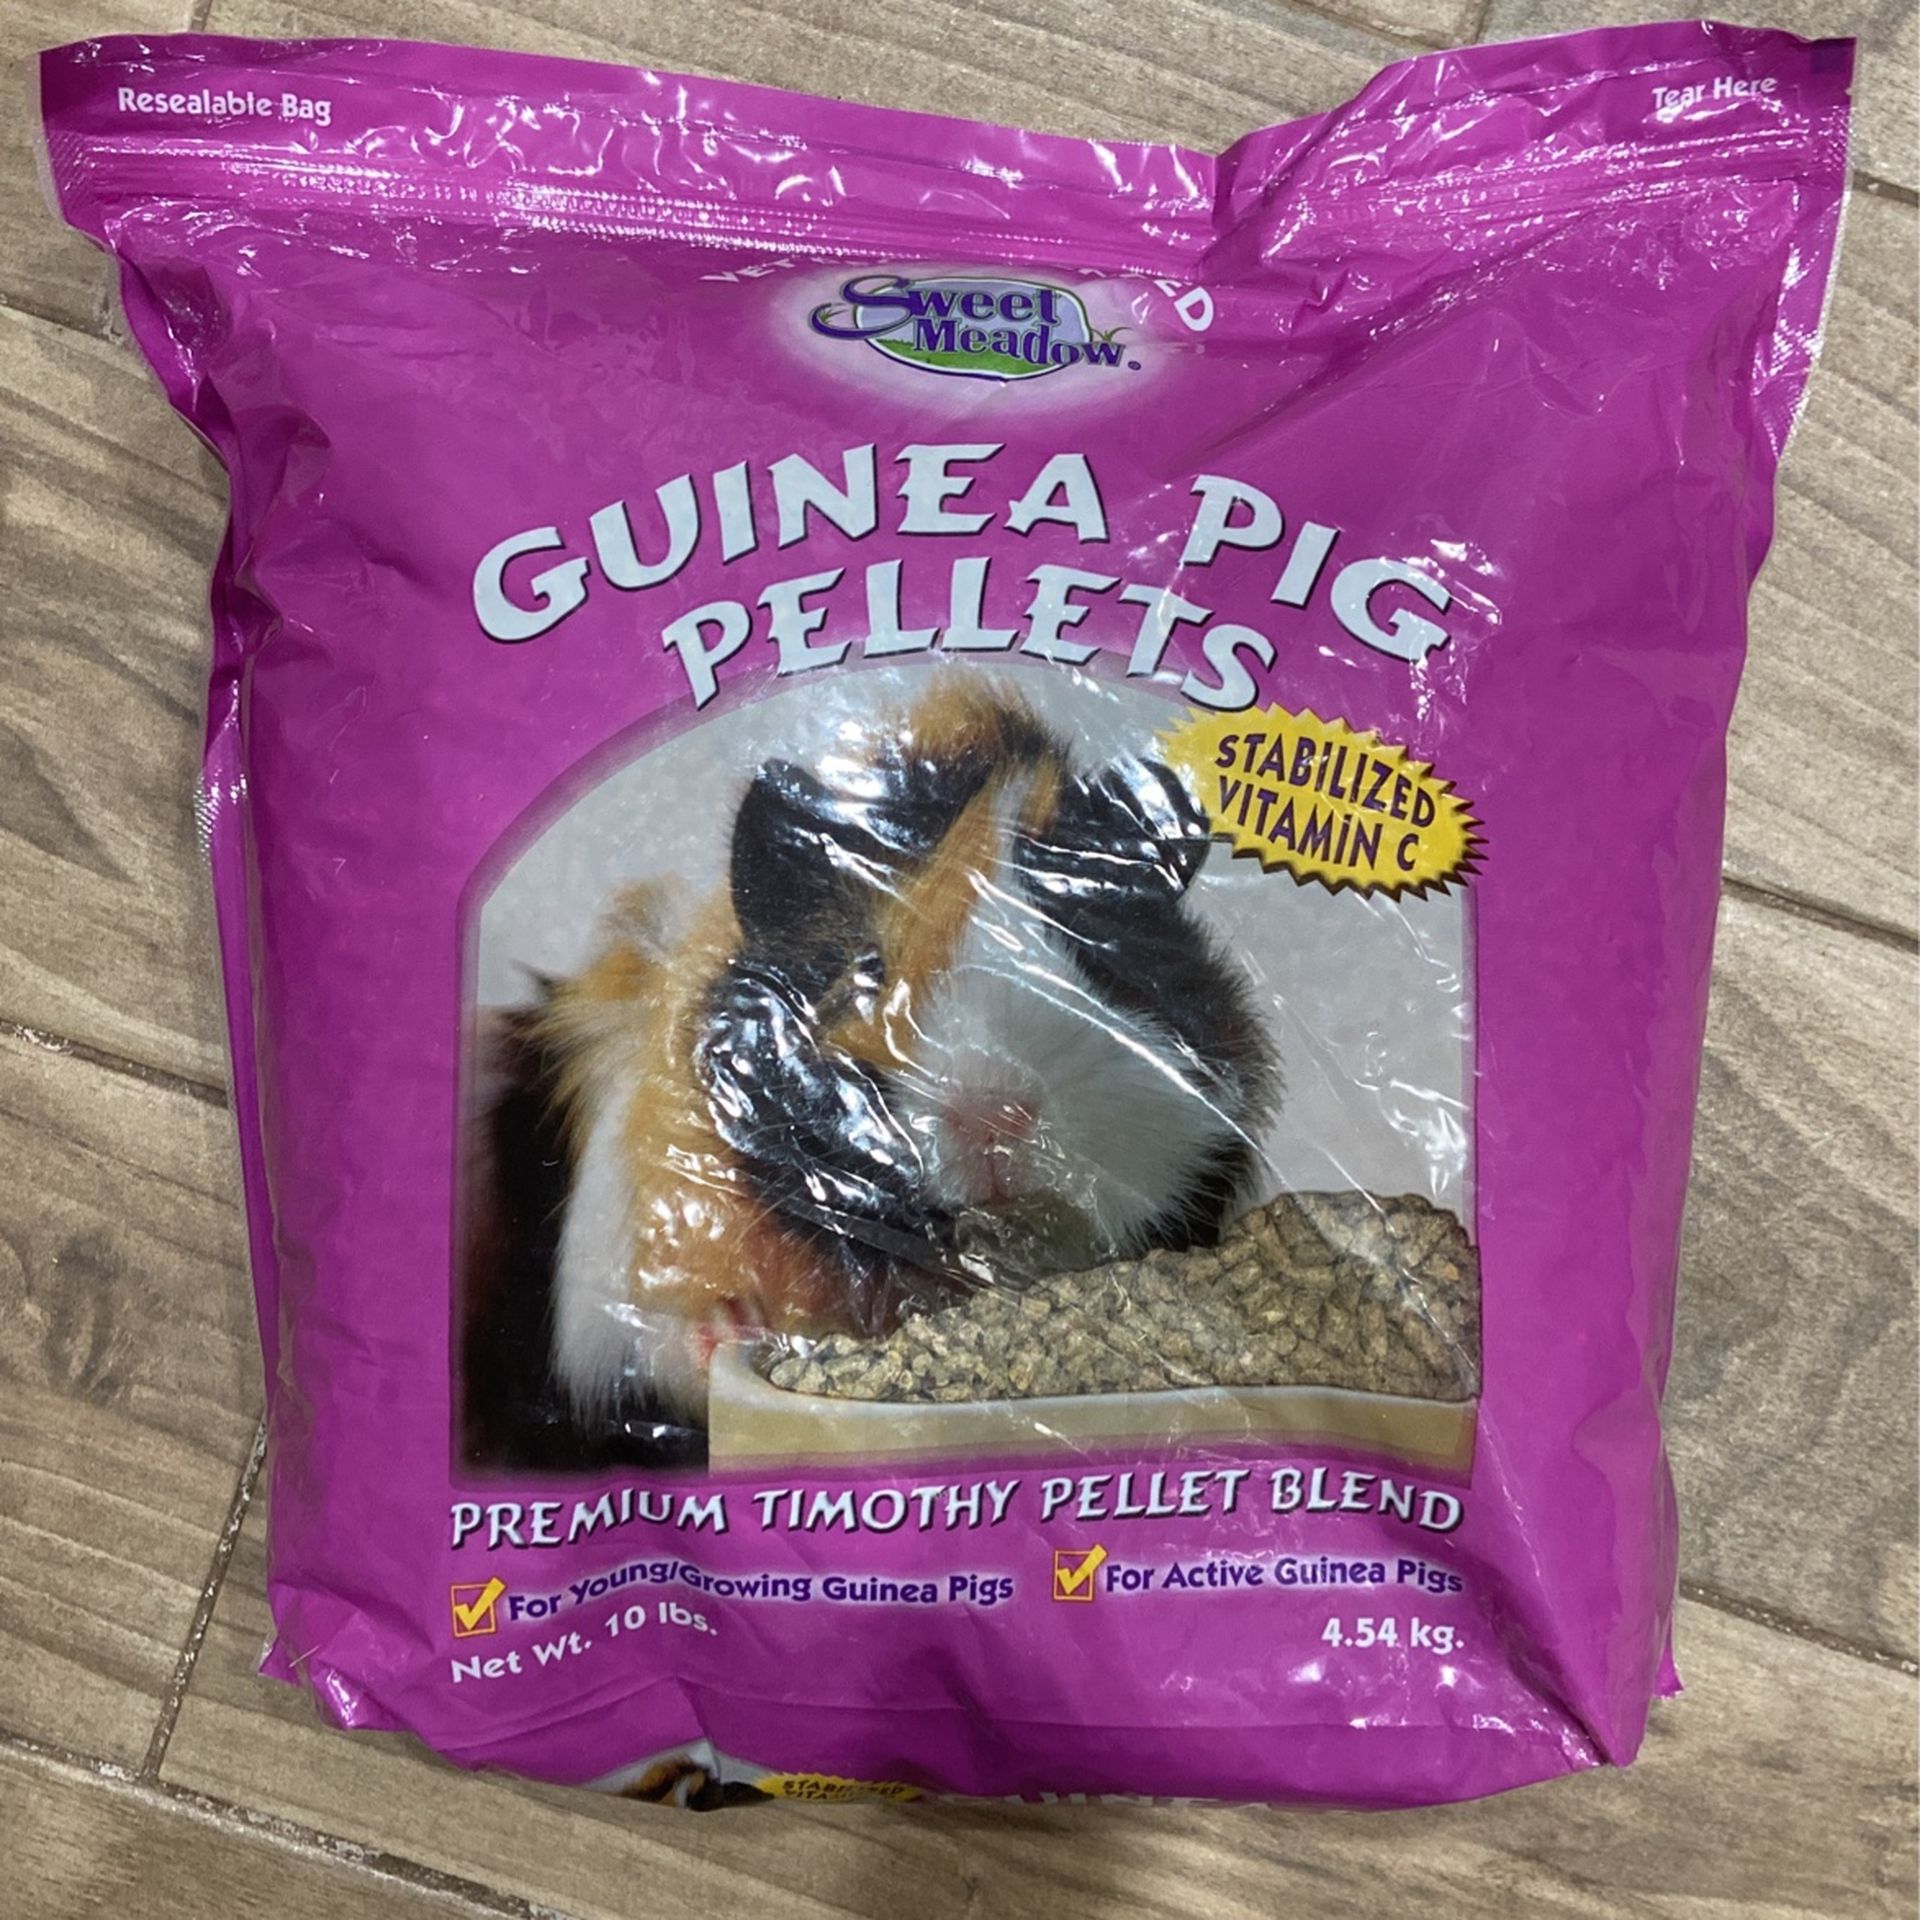 Guinea Pig Food 